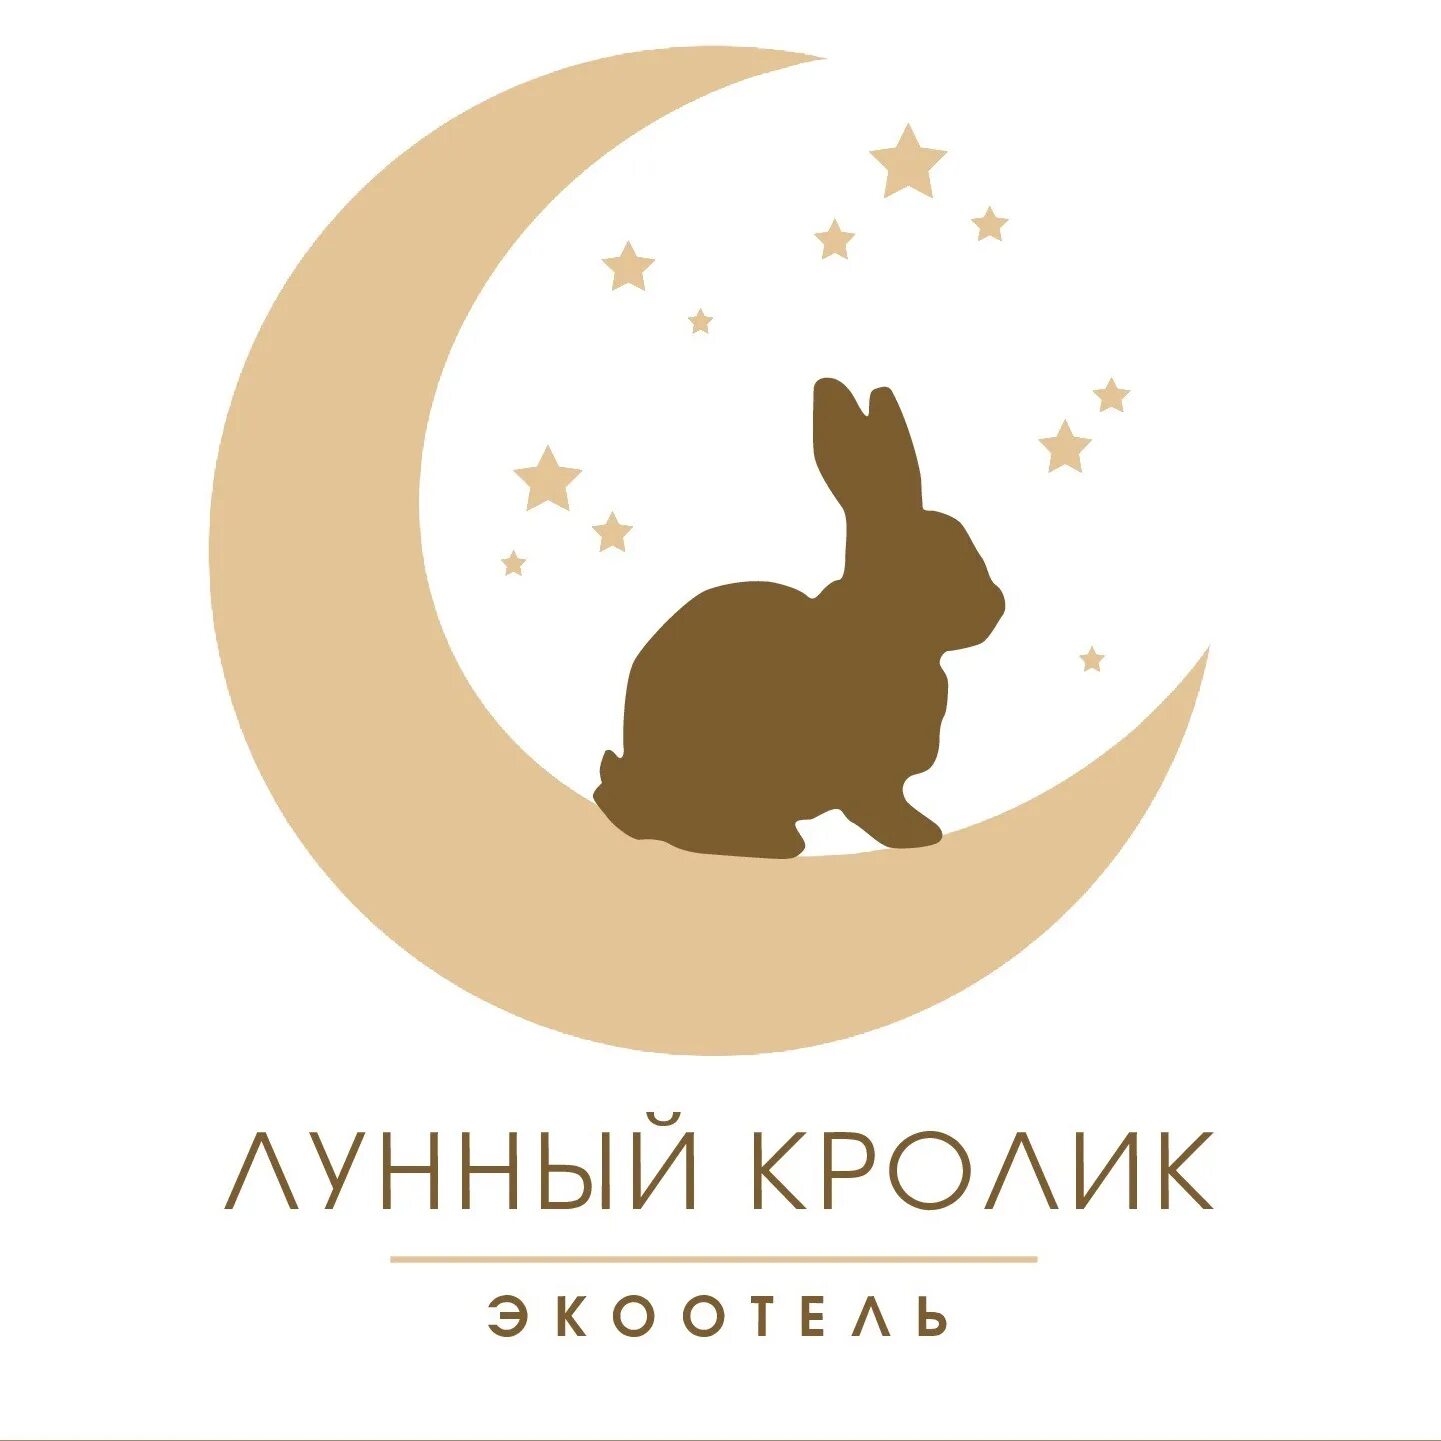 Отель лунный кролик. Лунный кролик. Лунный кролик Экоотель. Лунный кролик Легенда. Кролик на Луне.